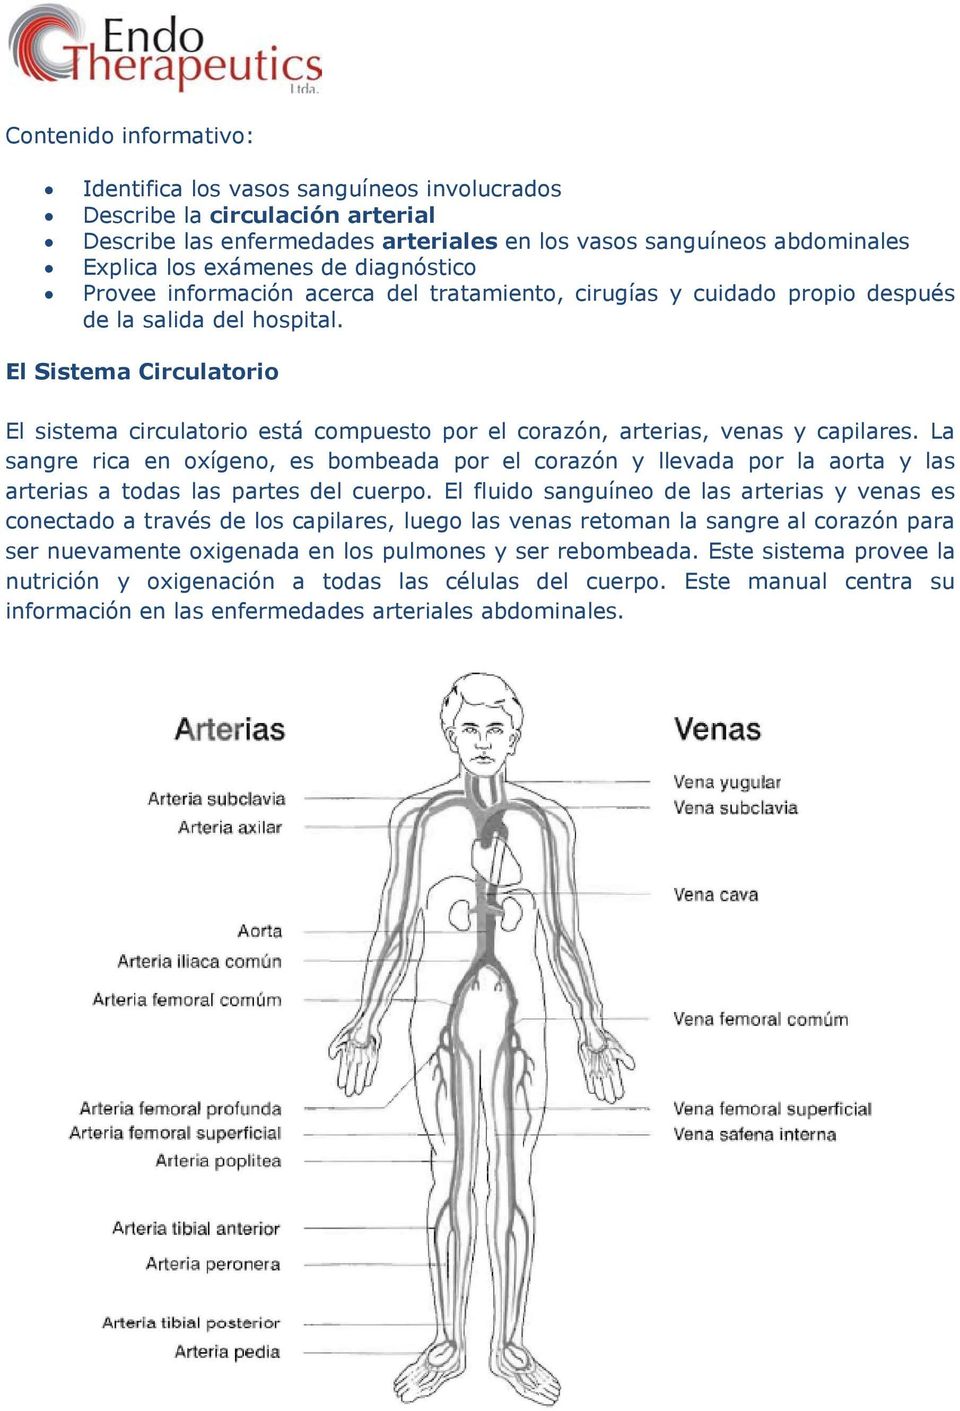 El Sistema Circulatorio El sistema circulatorio está compuesto por el corazón, arterias, venas y capilares.